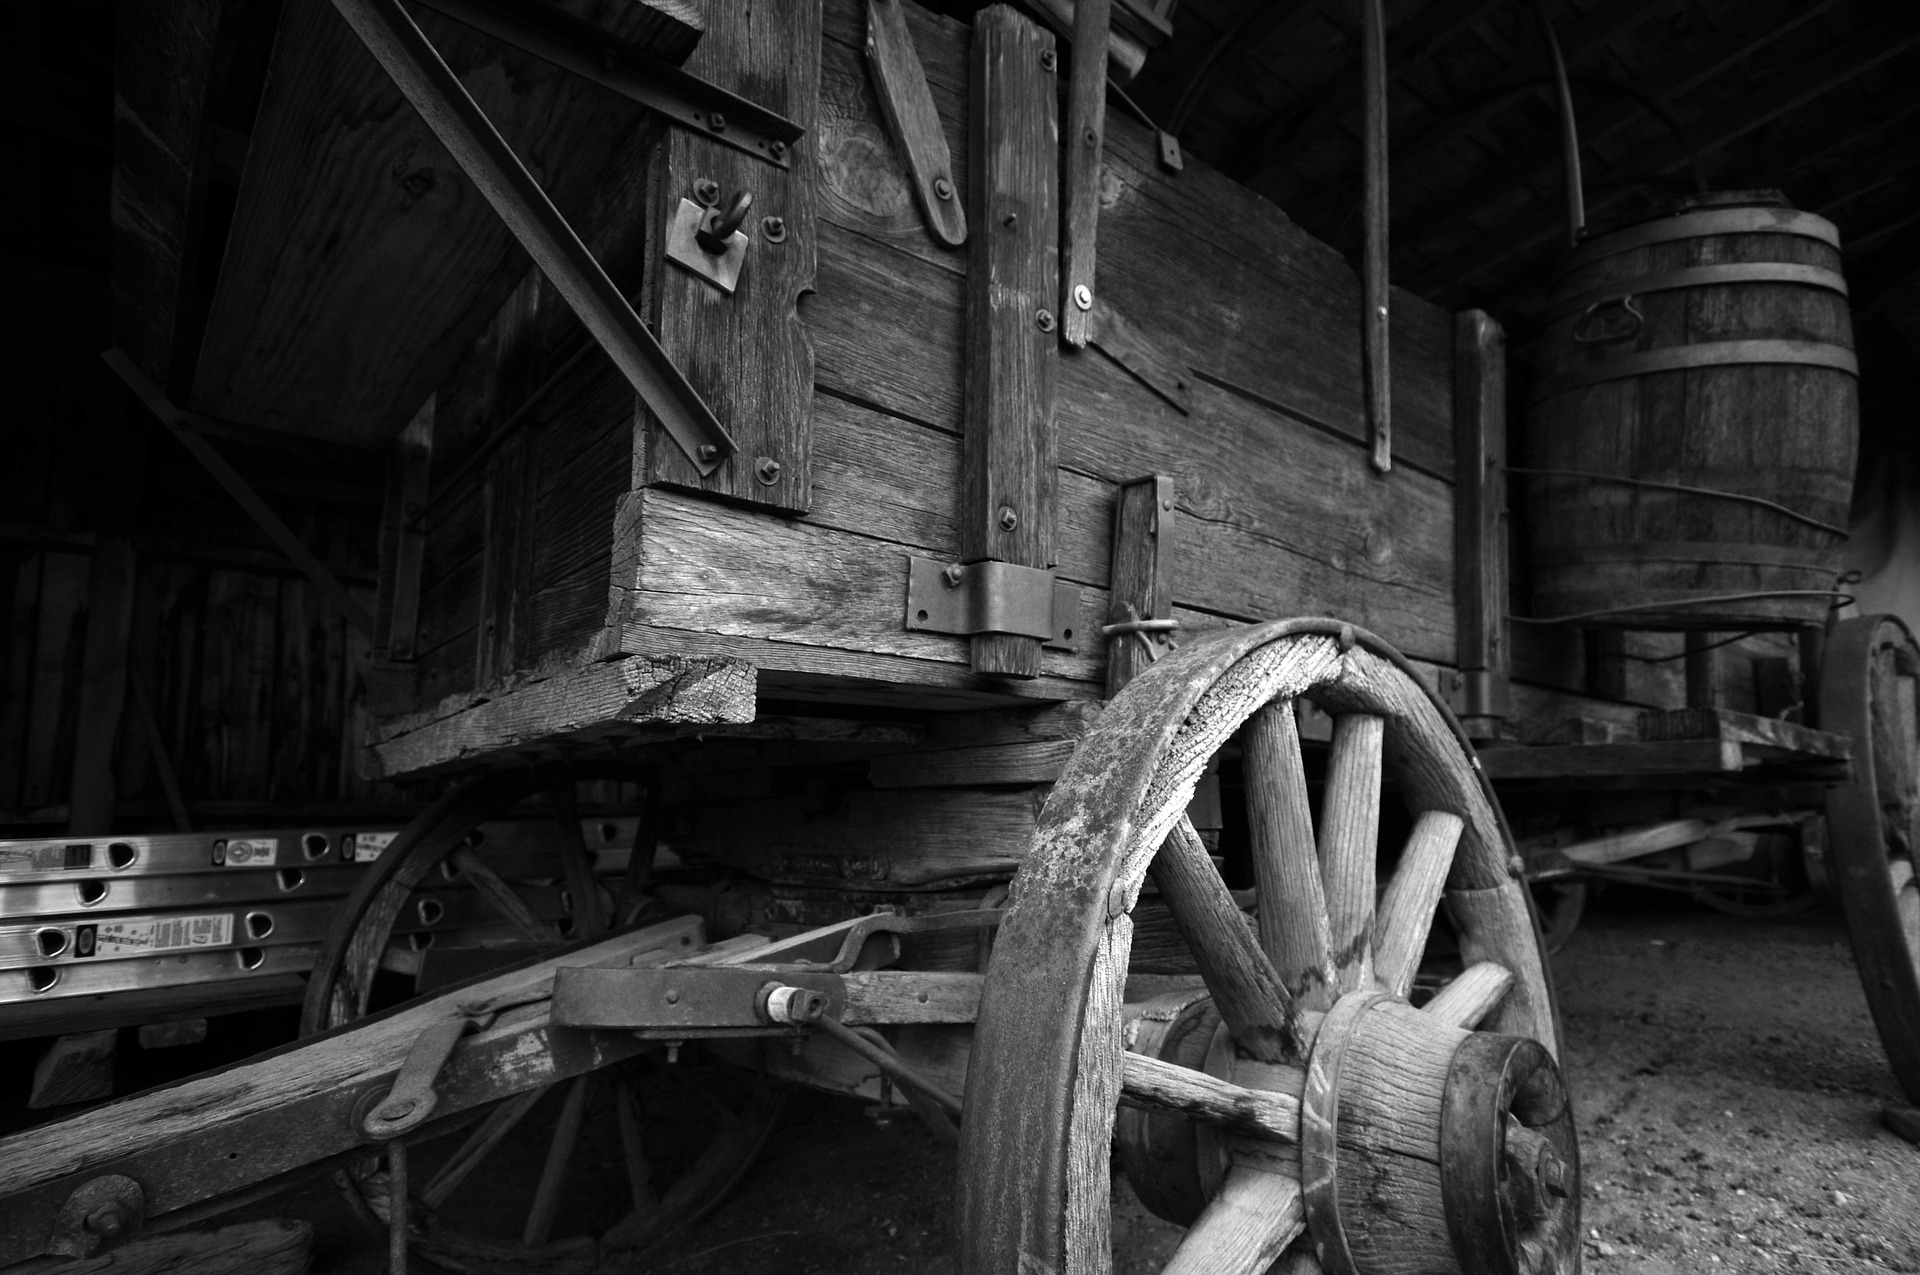 old-wagon-844138_1920.jpg